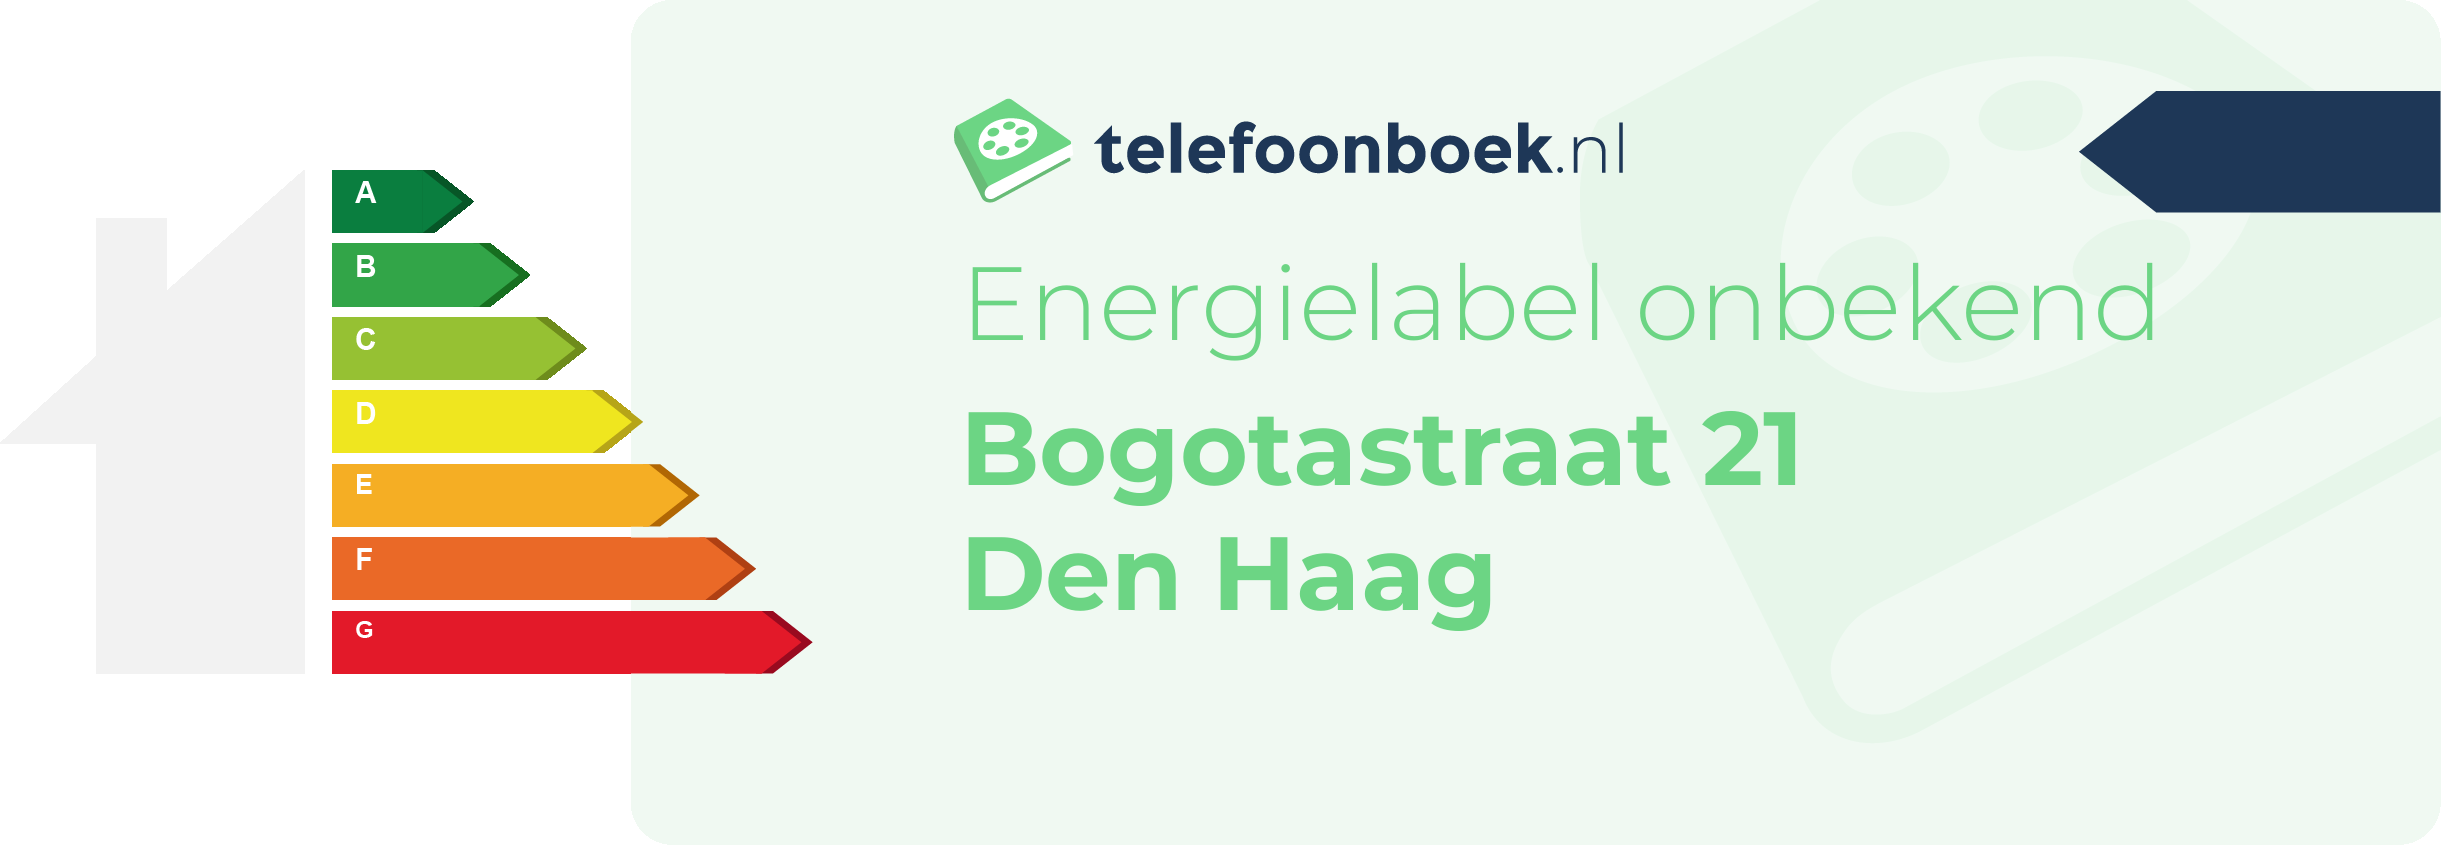 Energielabel Bogotastraat 21 Den Haag